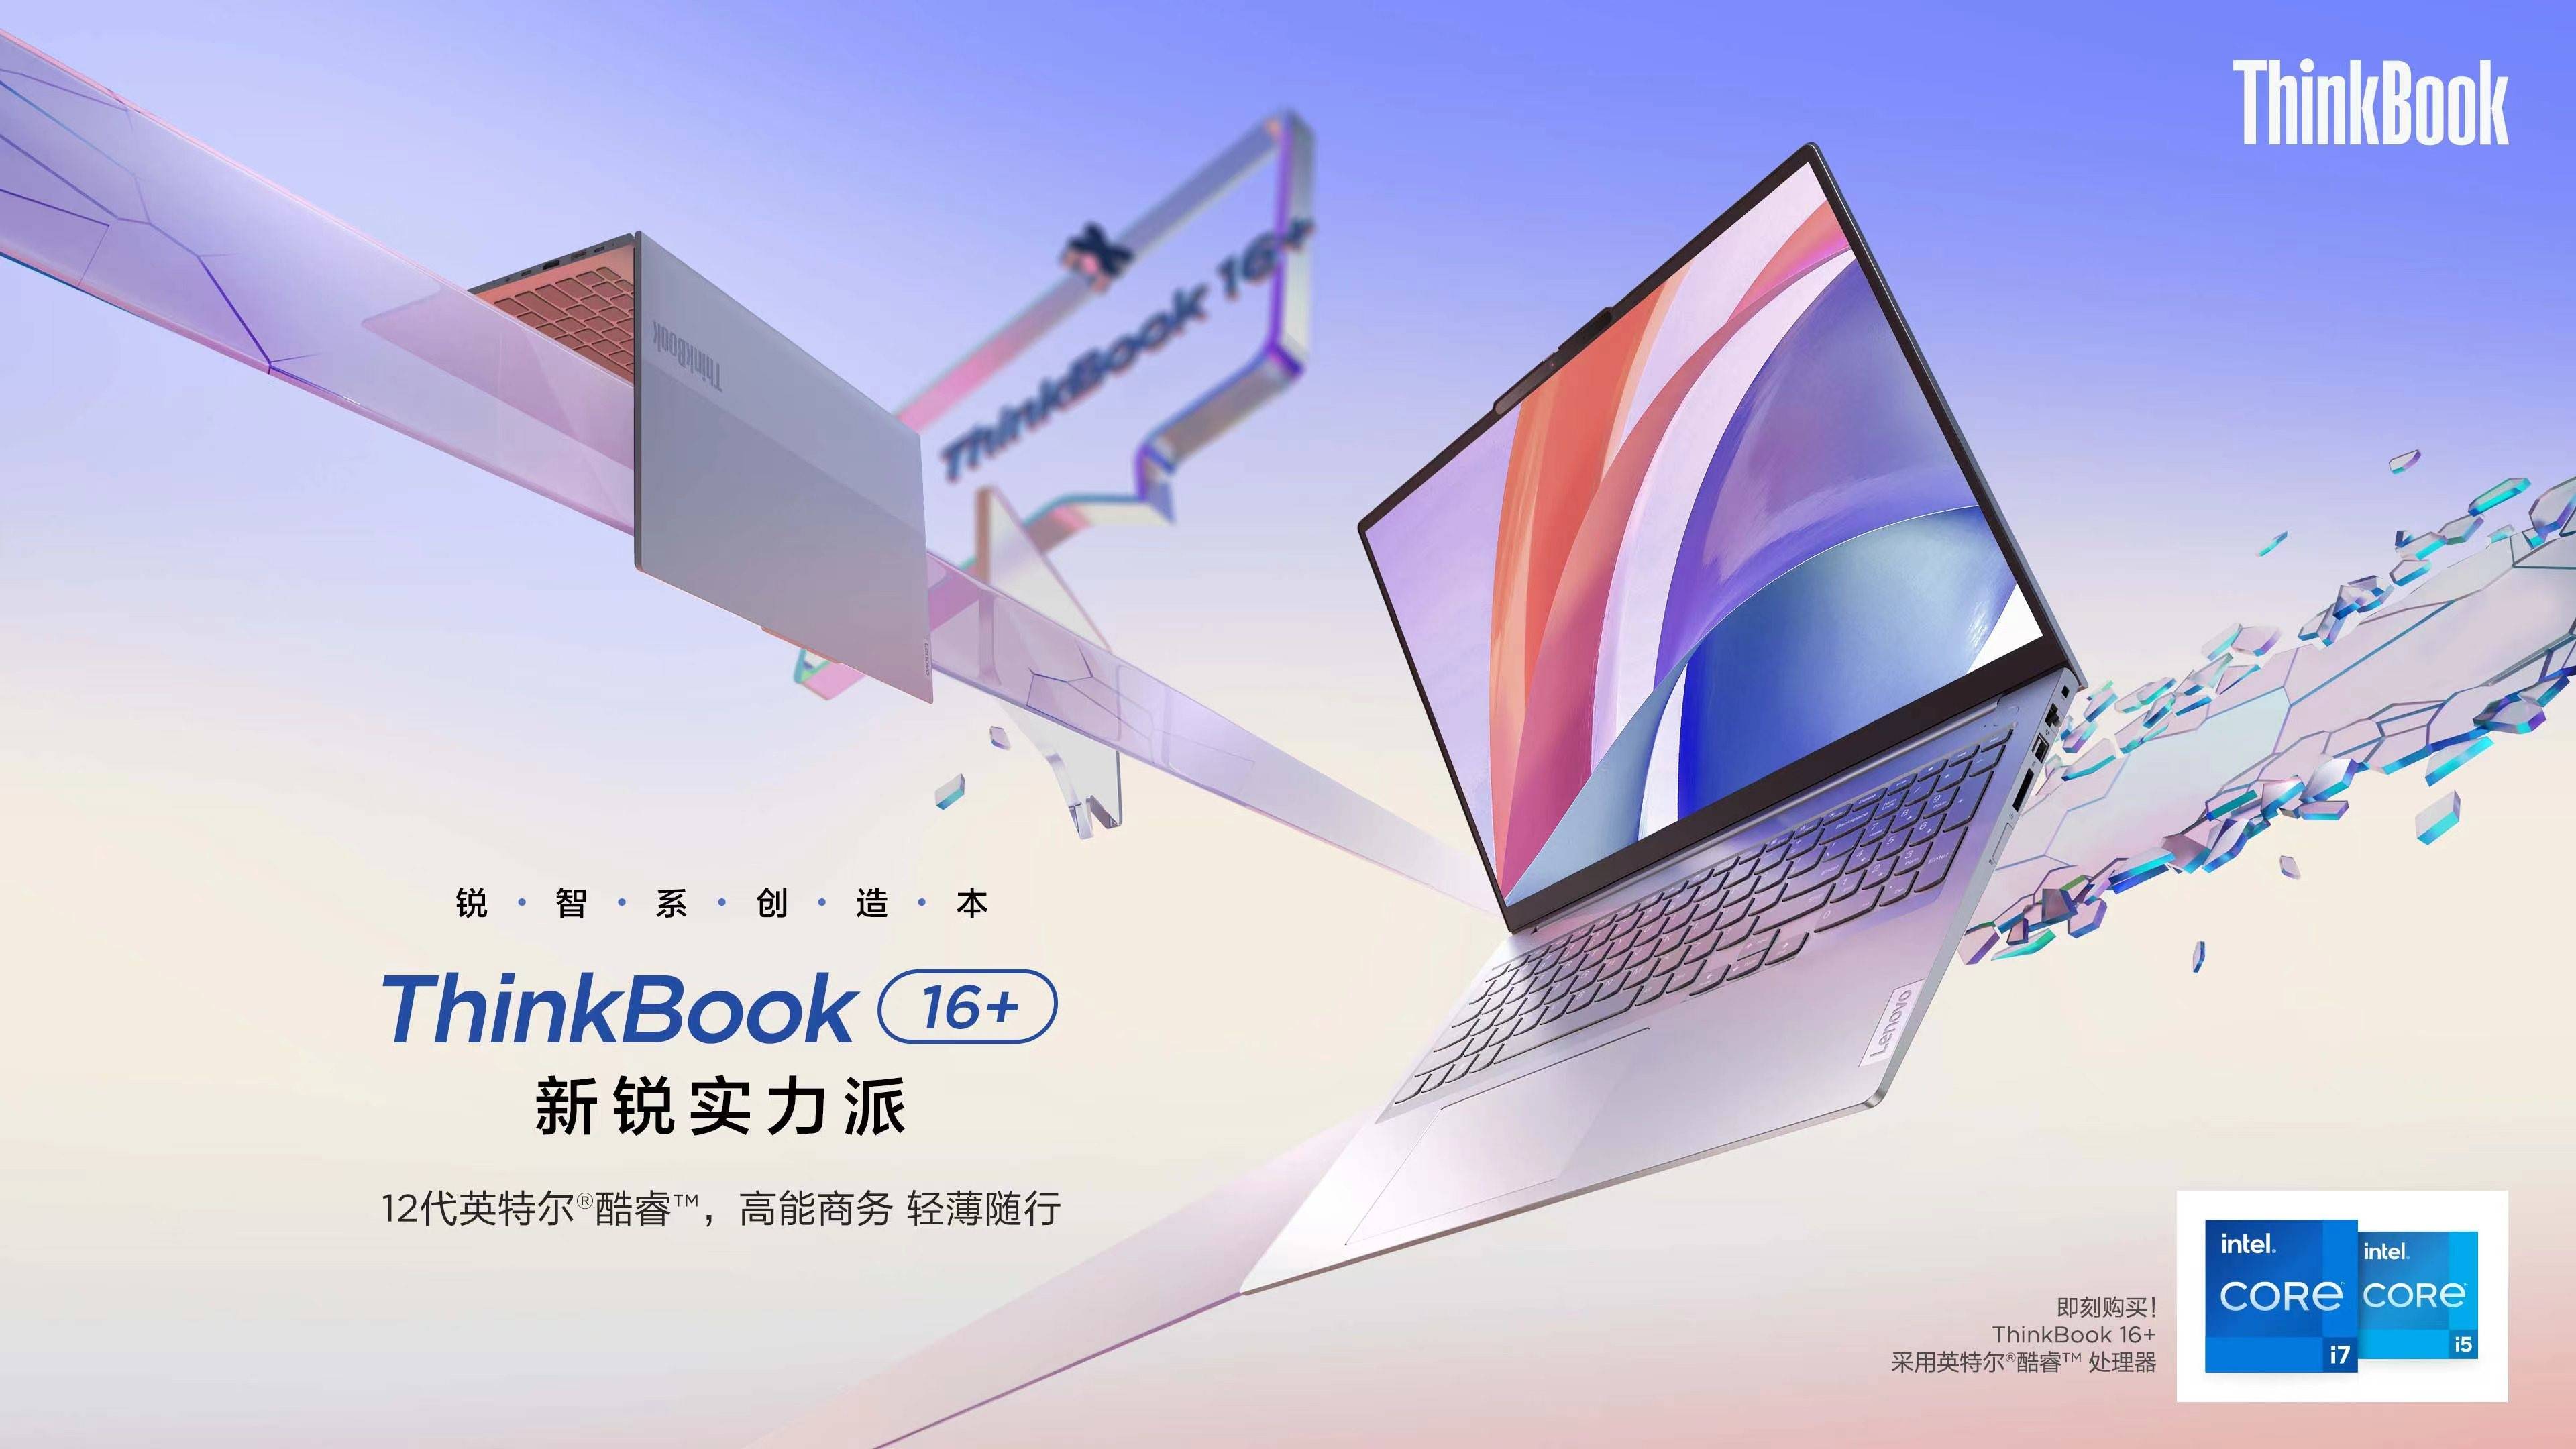 奥运冠军任子威任子威空降ThinkBook直播间，新锐实力还看ThinkBook 16+